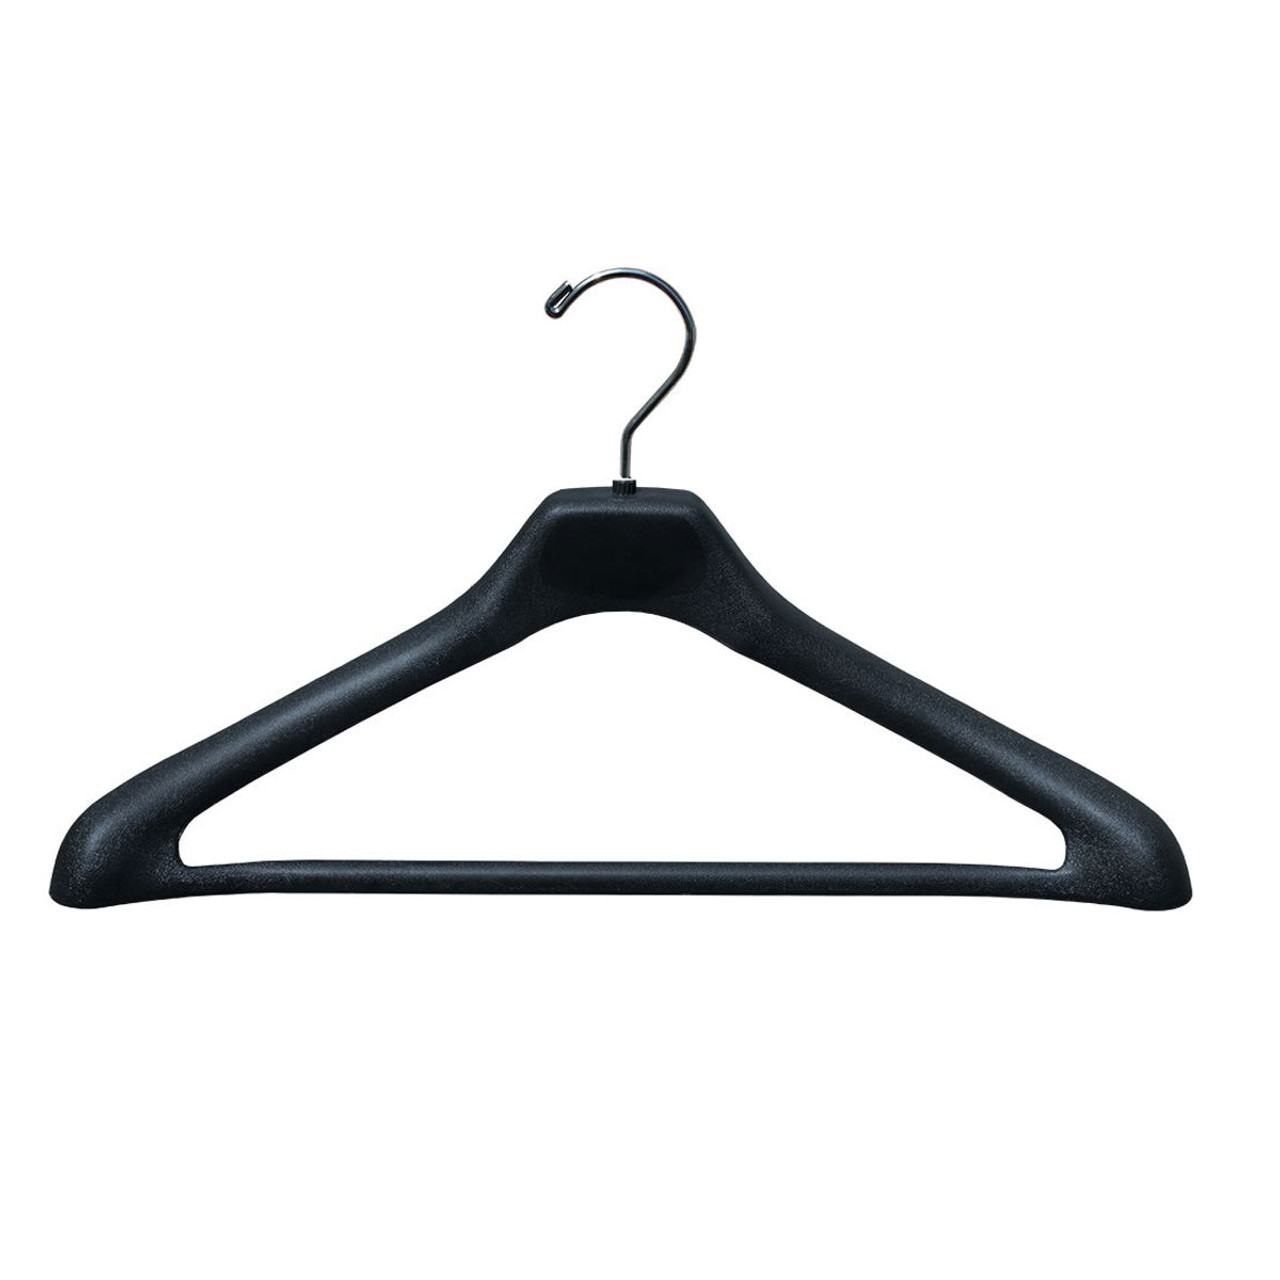 19 Black Plastic Suit Hanger W/ Suit Bar 1-1/2 Thick Box of 50